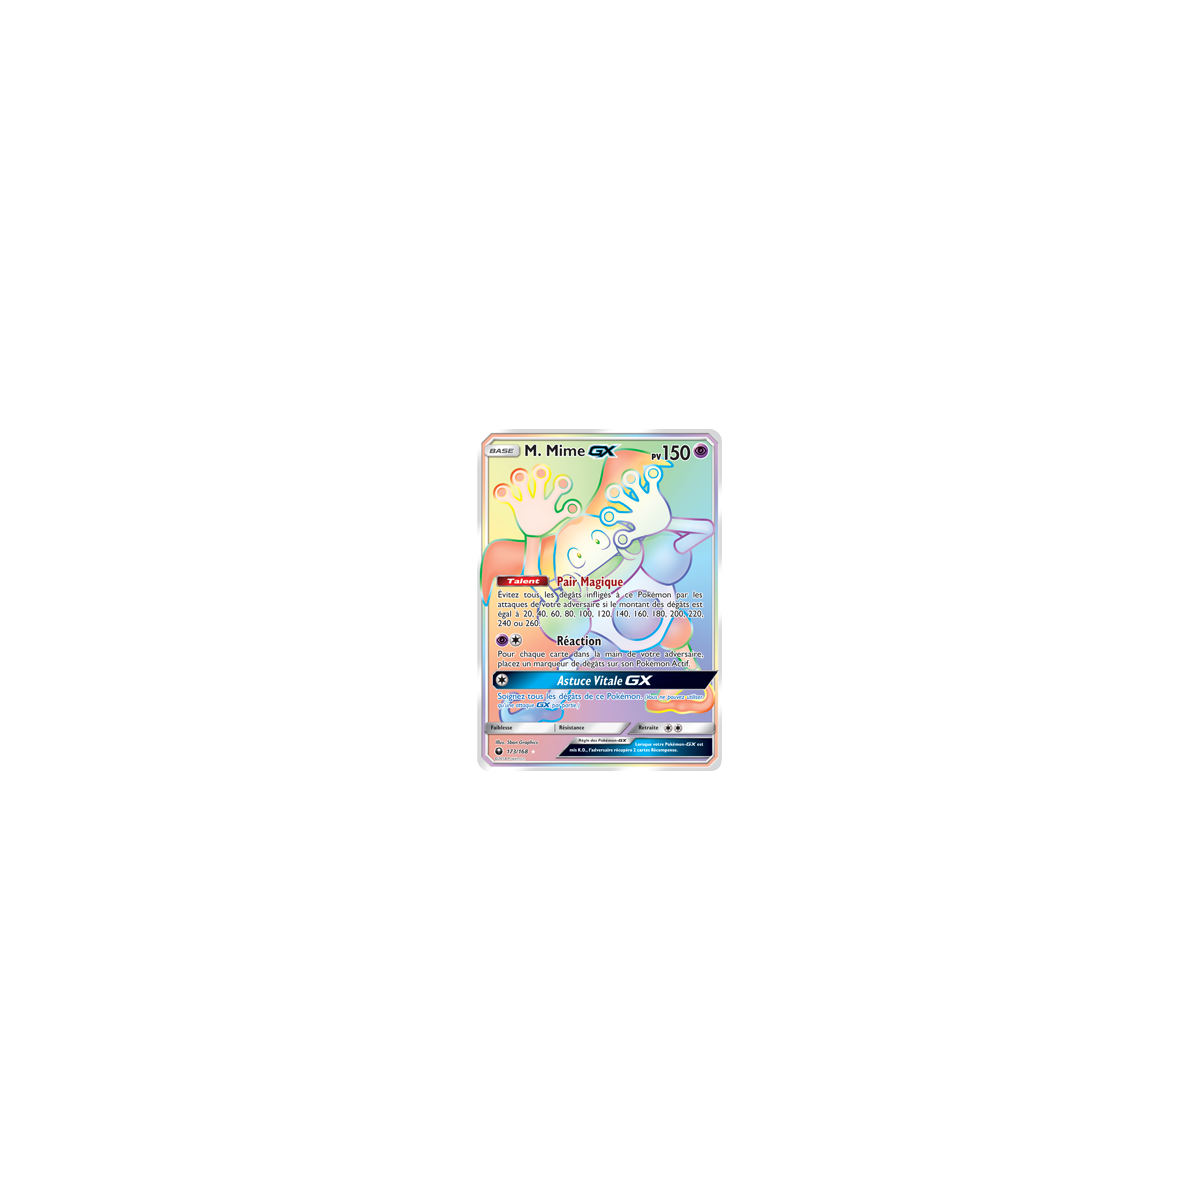 Carte M. Mime - Arc-en-ciel rare de Pokémon Tempête Céleste 173/168